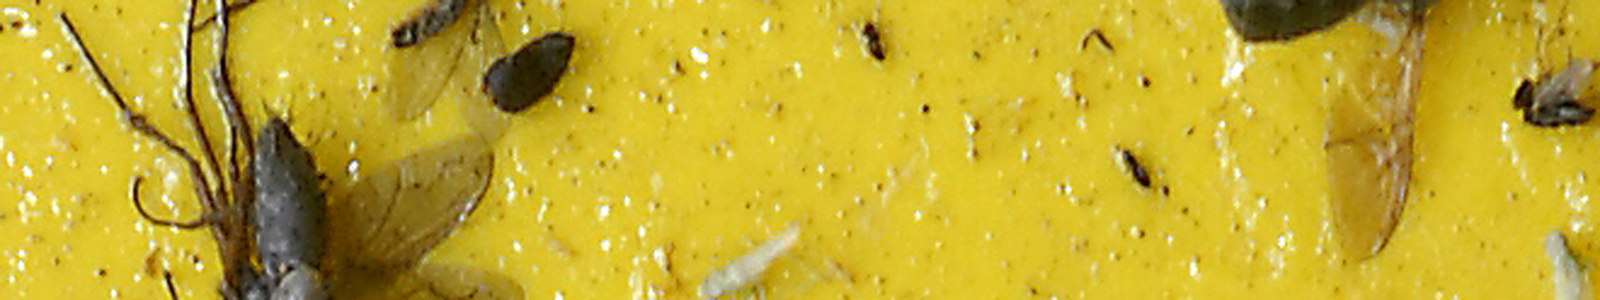 Schädlingsinsekten auf Gelbfalle ©Feuerbach